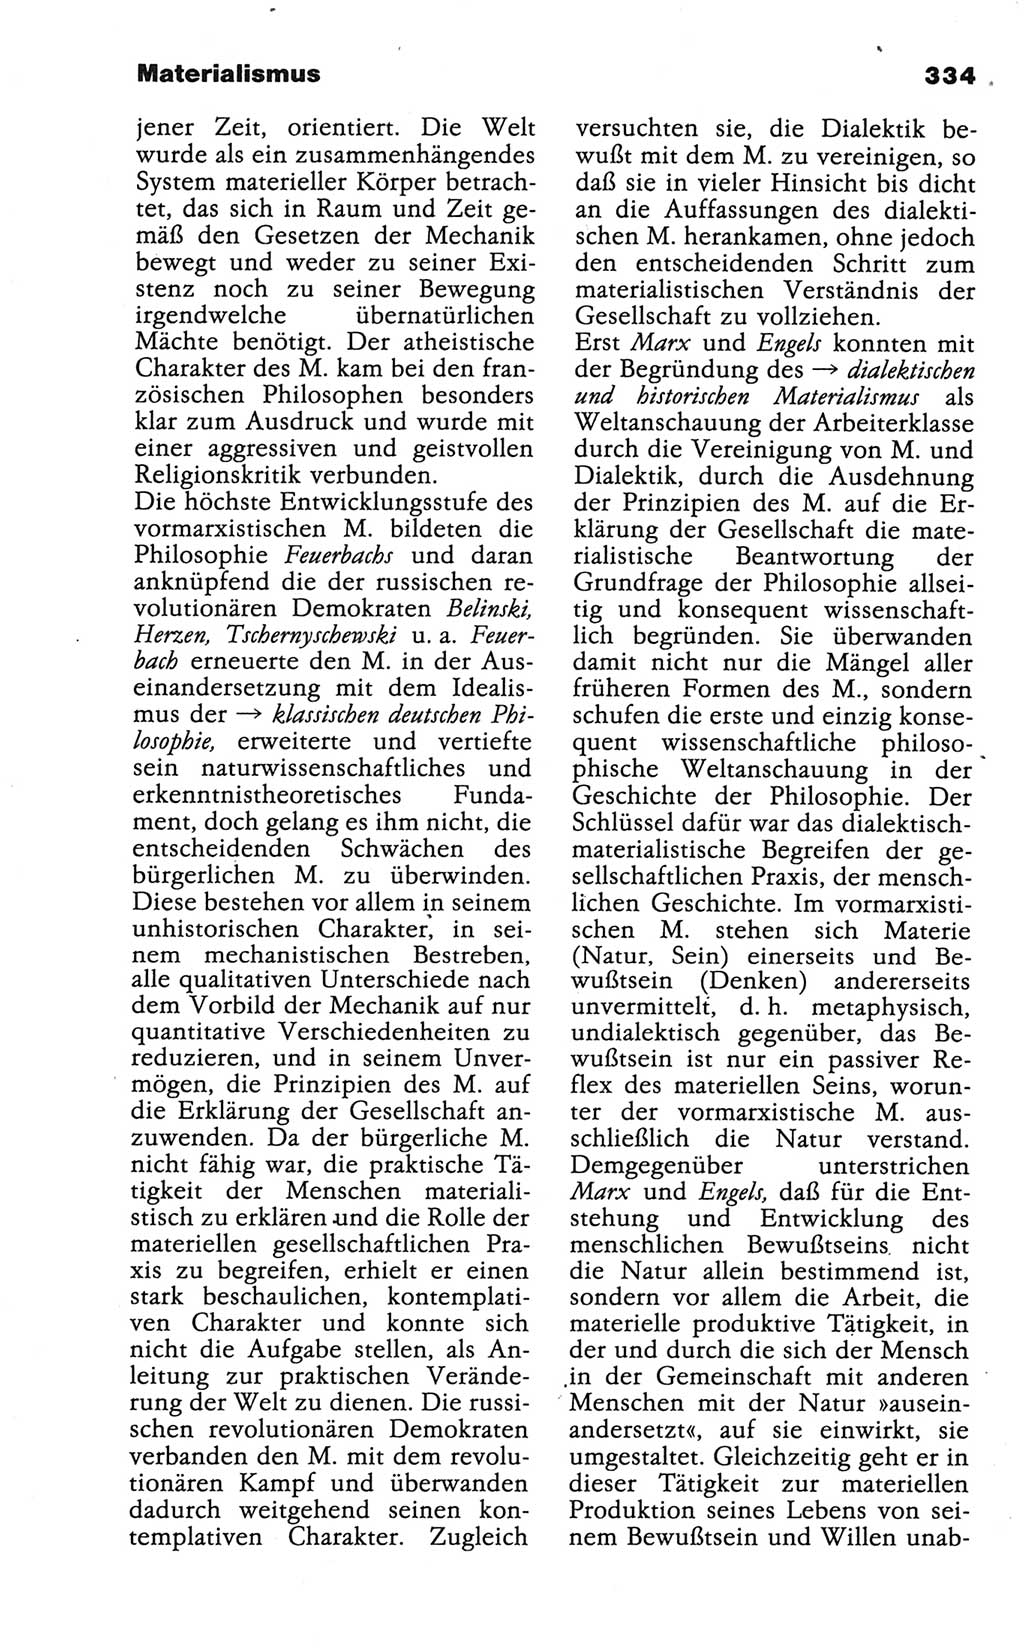 Wörterbuch der marxistisch-leninistischen Philosophie [Deutsche Demokratische Republik (DDR)] 1986, Seite 334 (Wb. ML Phil. DDR 1986, S. 334)